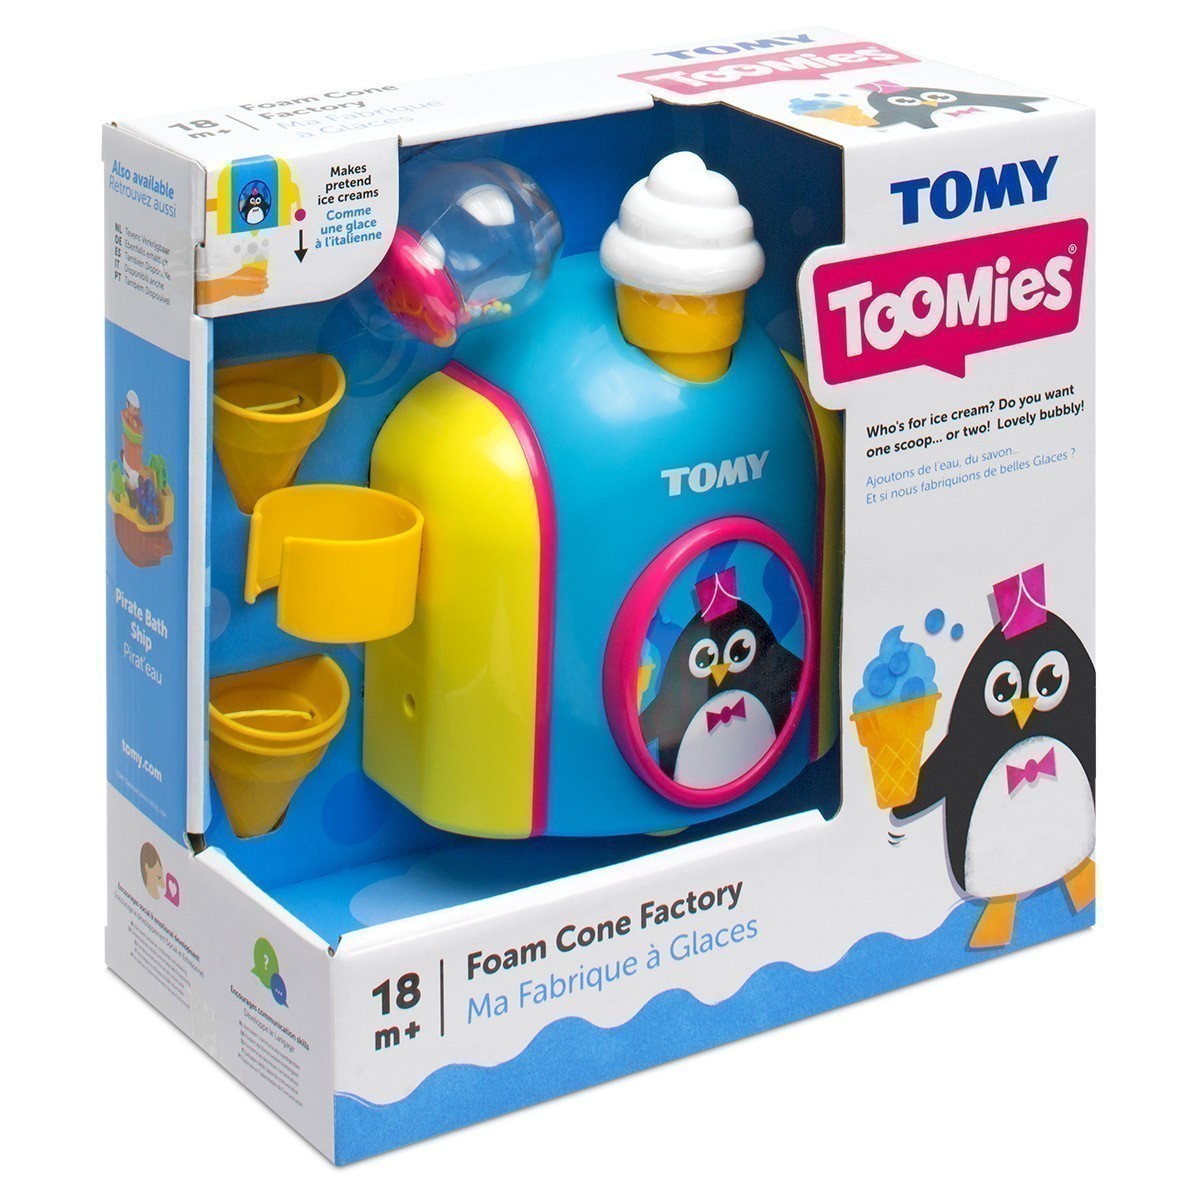 Tomy - Toomies Foam Cone Factory